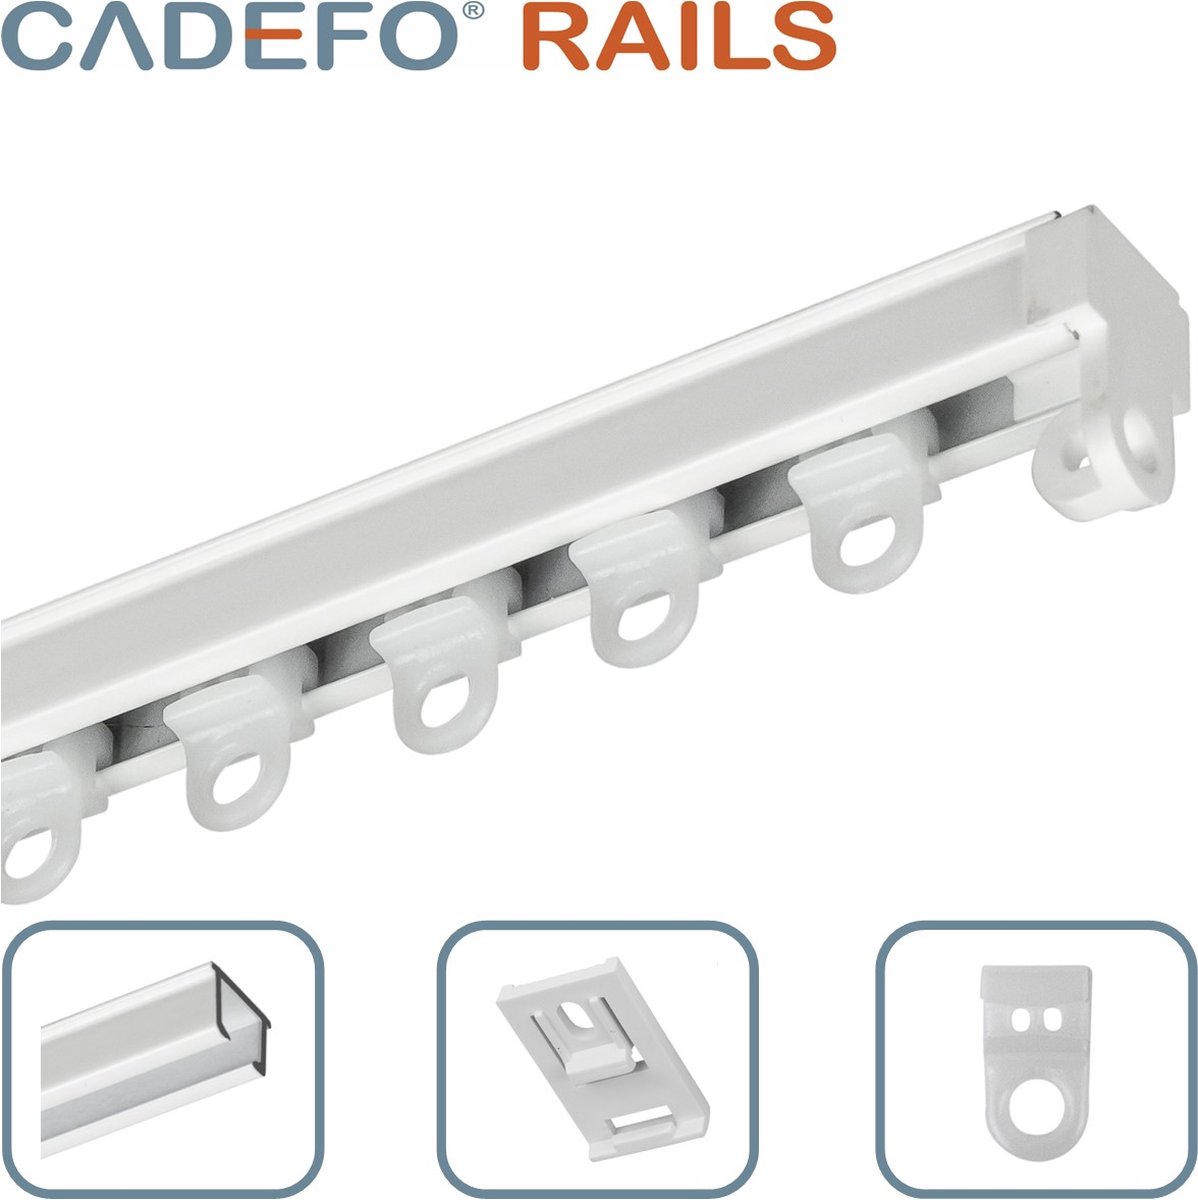 CADEFO RAILS (501 - 550 cm) Gordijnrails - Compleet op maat! - UIT 1 STUK - Leverbaar tot 6 meter - Plafondbevestiging - Lengte 510 cm